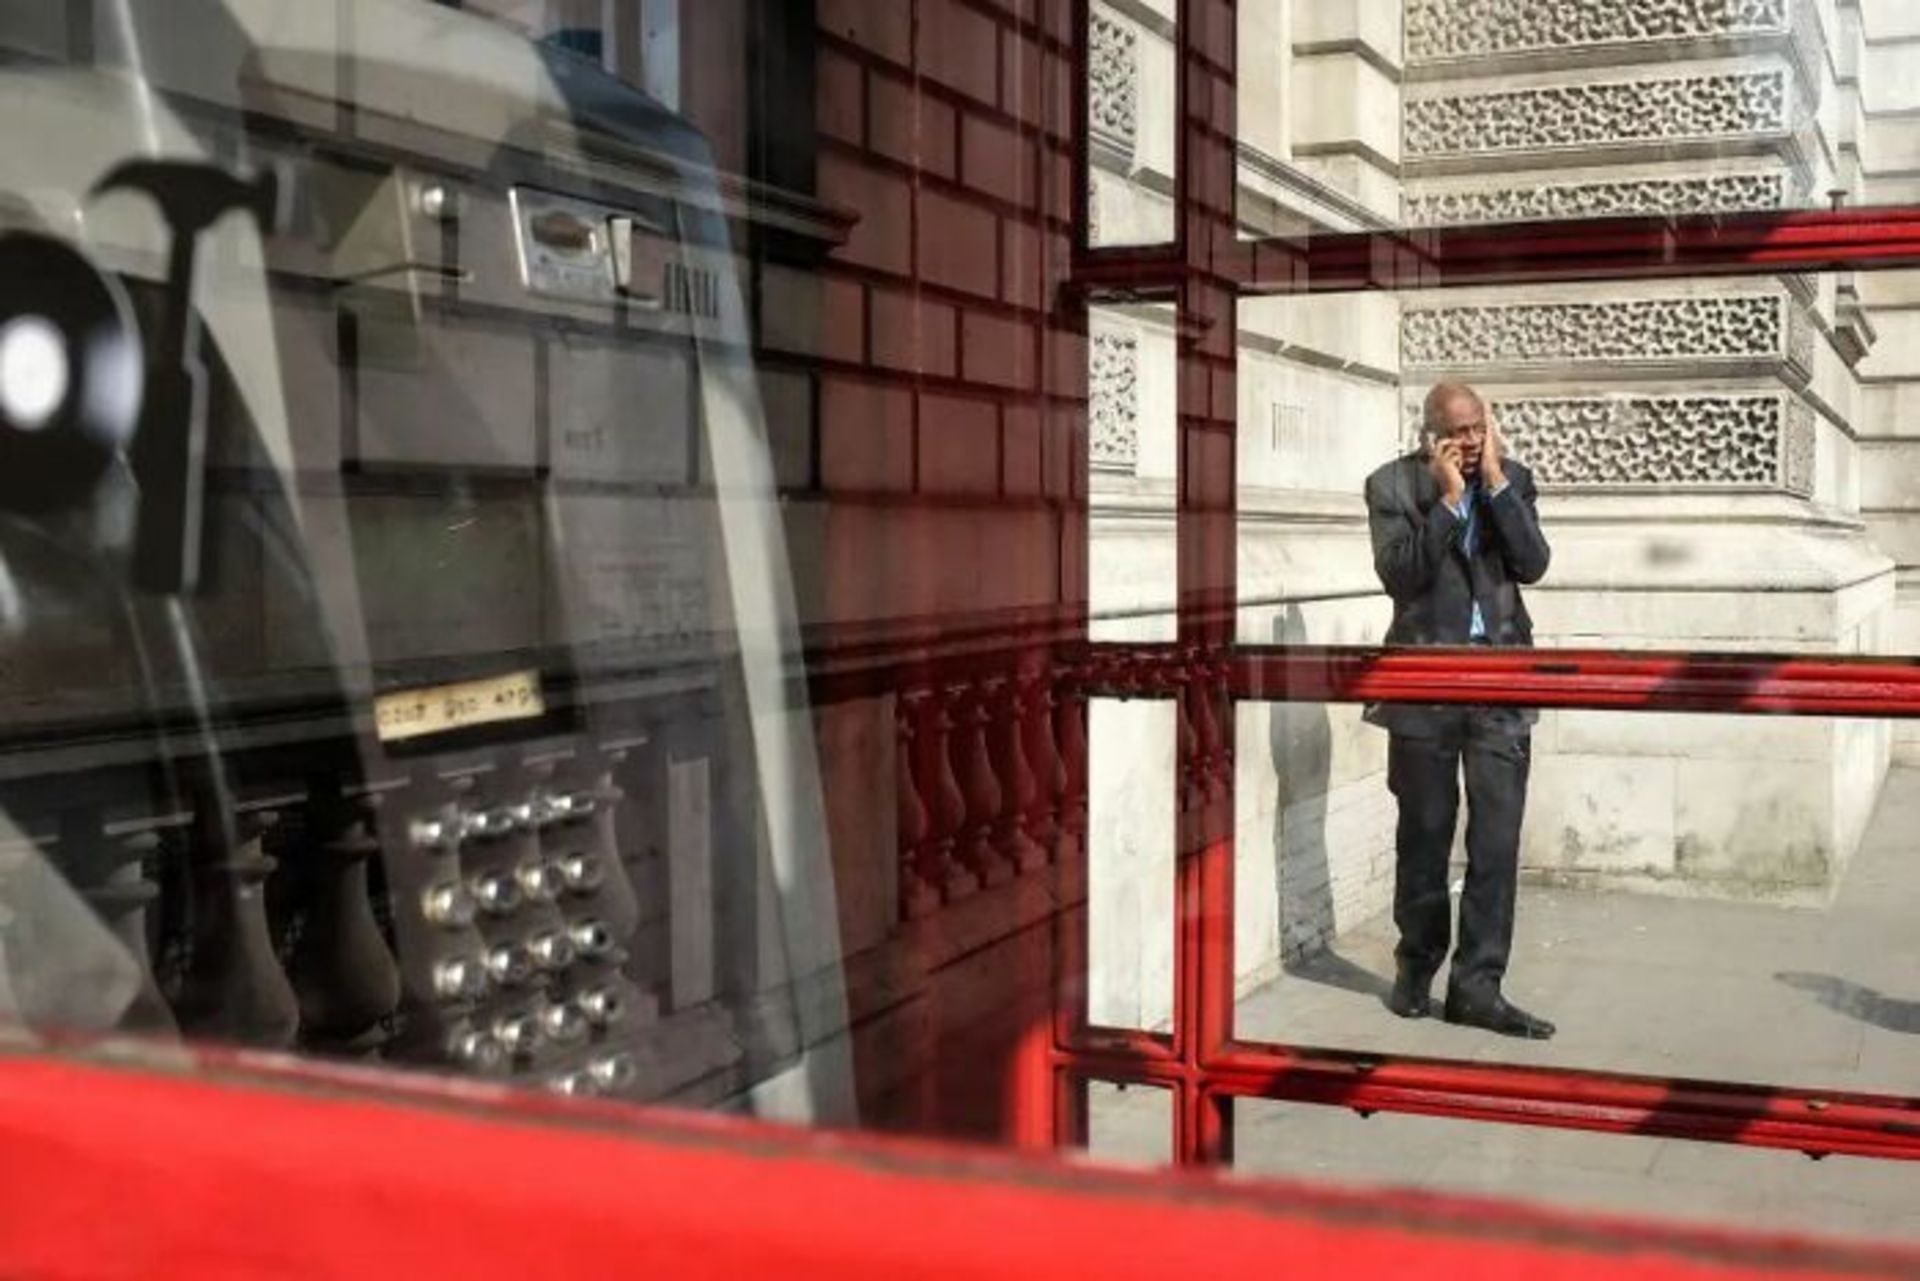 مرد در حال مکالمه با تلفن در پشت باجه تلفن قرمز